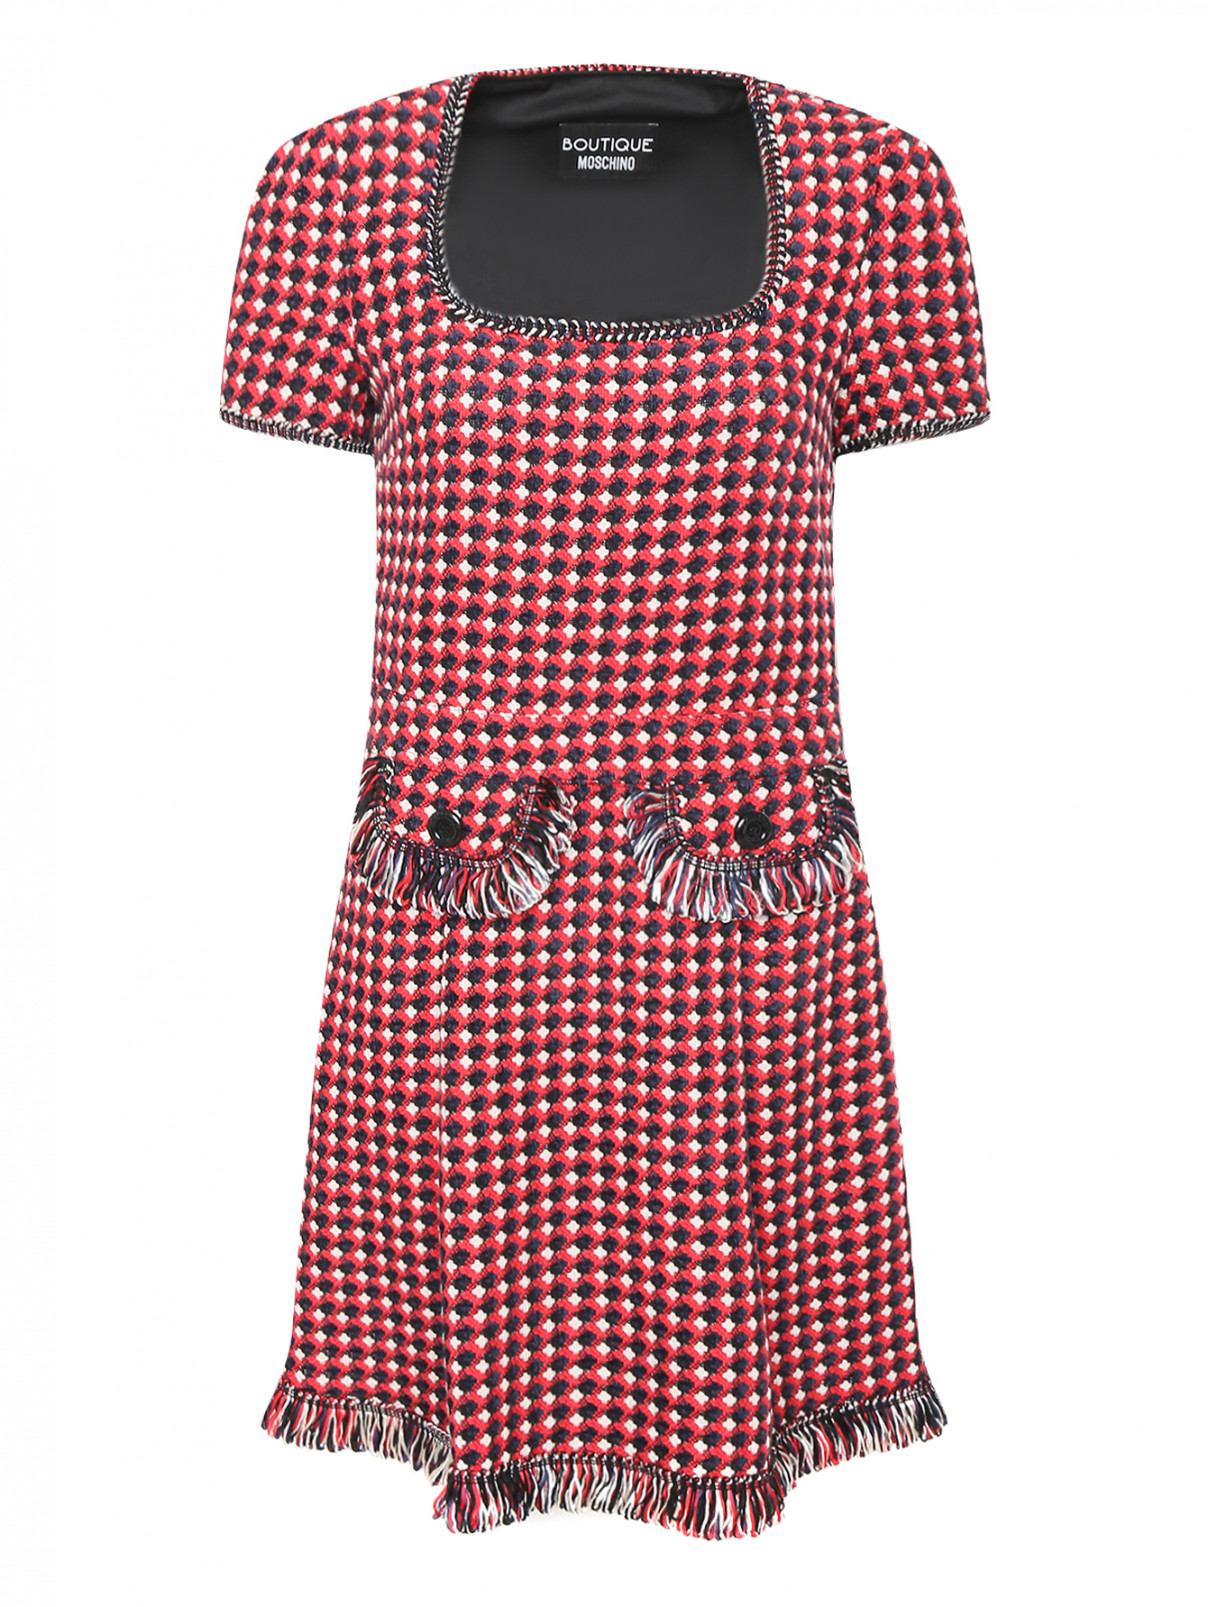 Платье из хлопка с короткими рукавами Moschino Boutique  –  Общий вид  – Цвет:  Красный